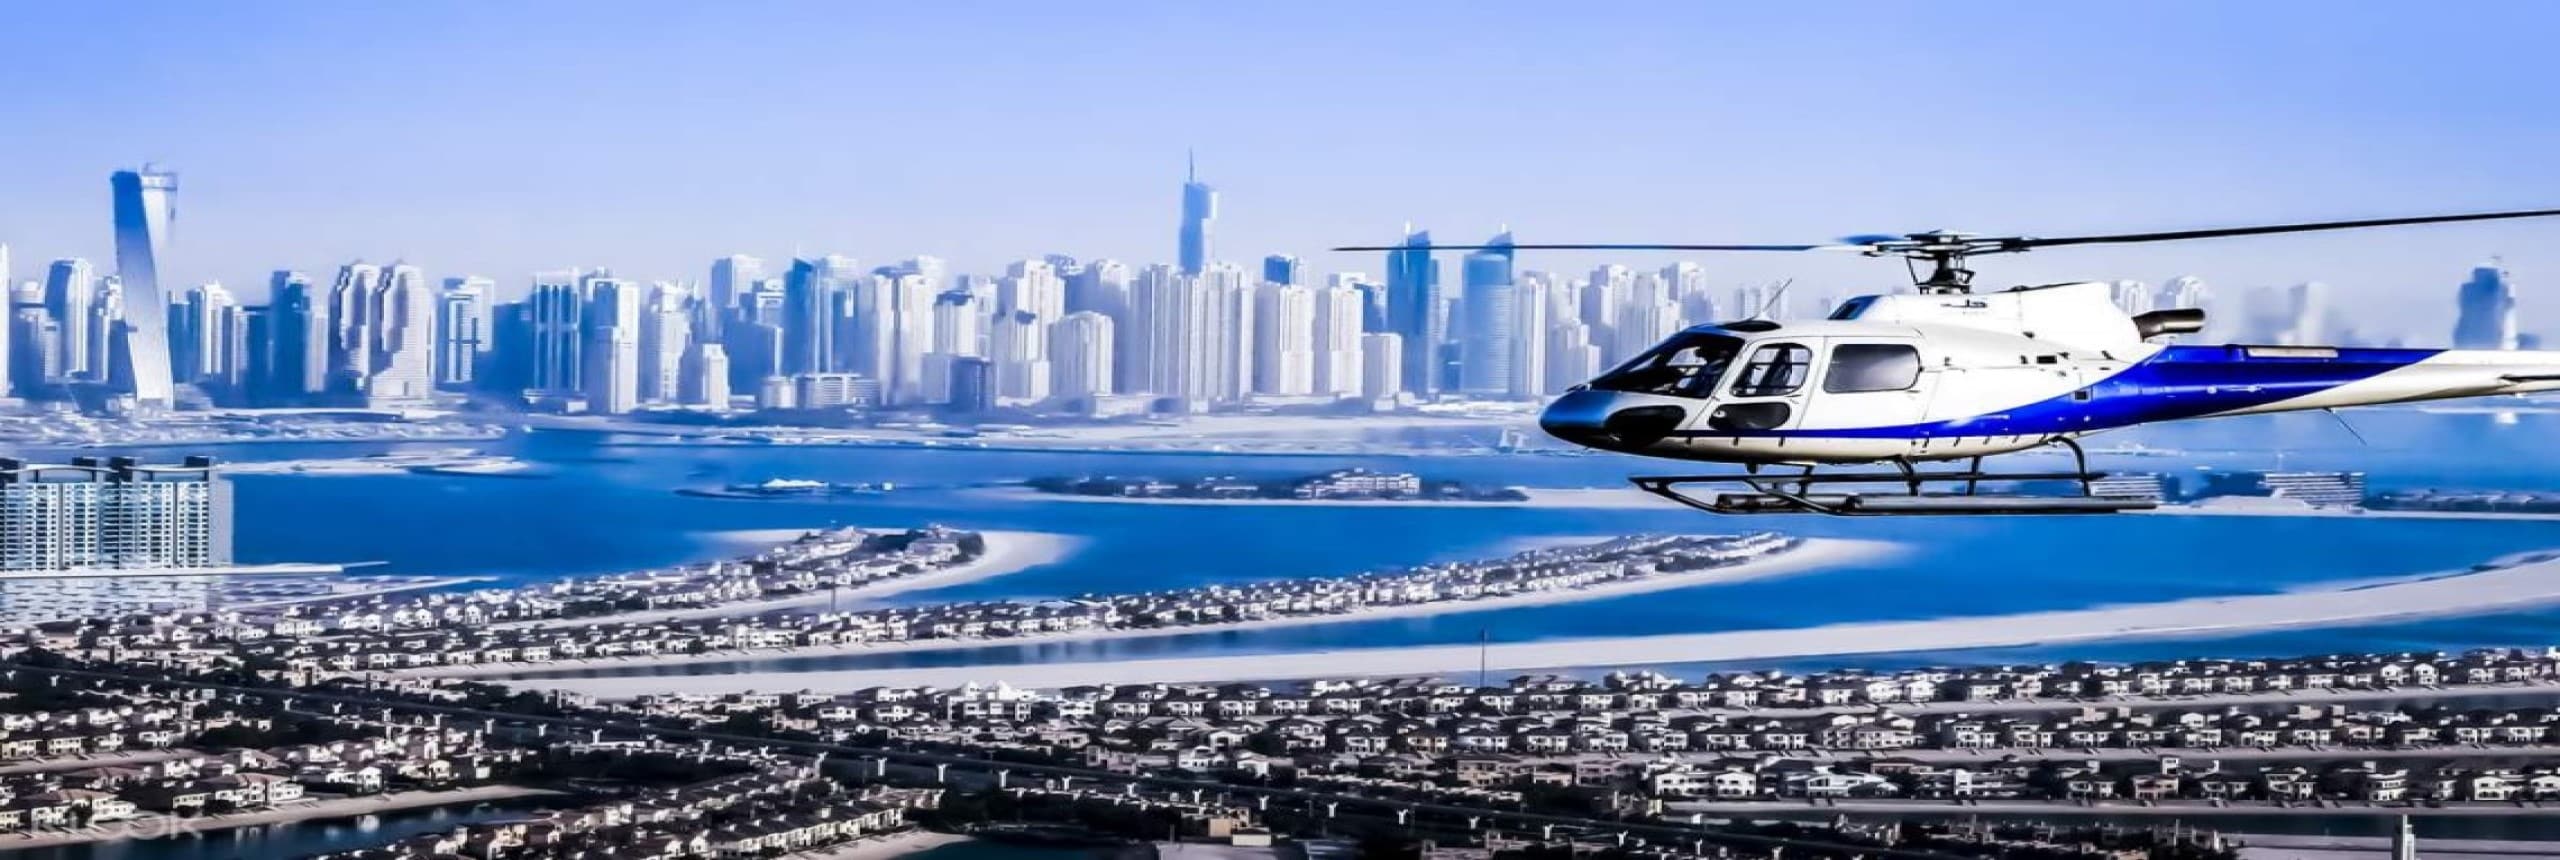 Dubai Helicopter Tour – Private Tour from Atlantis